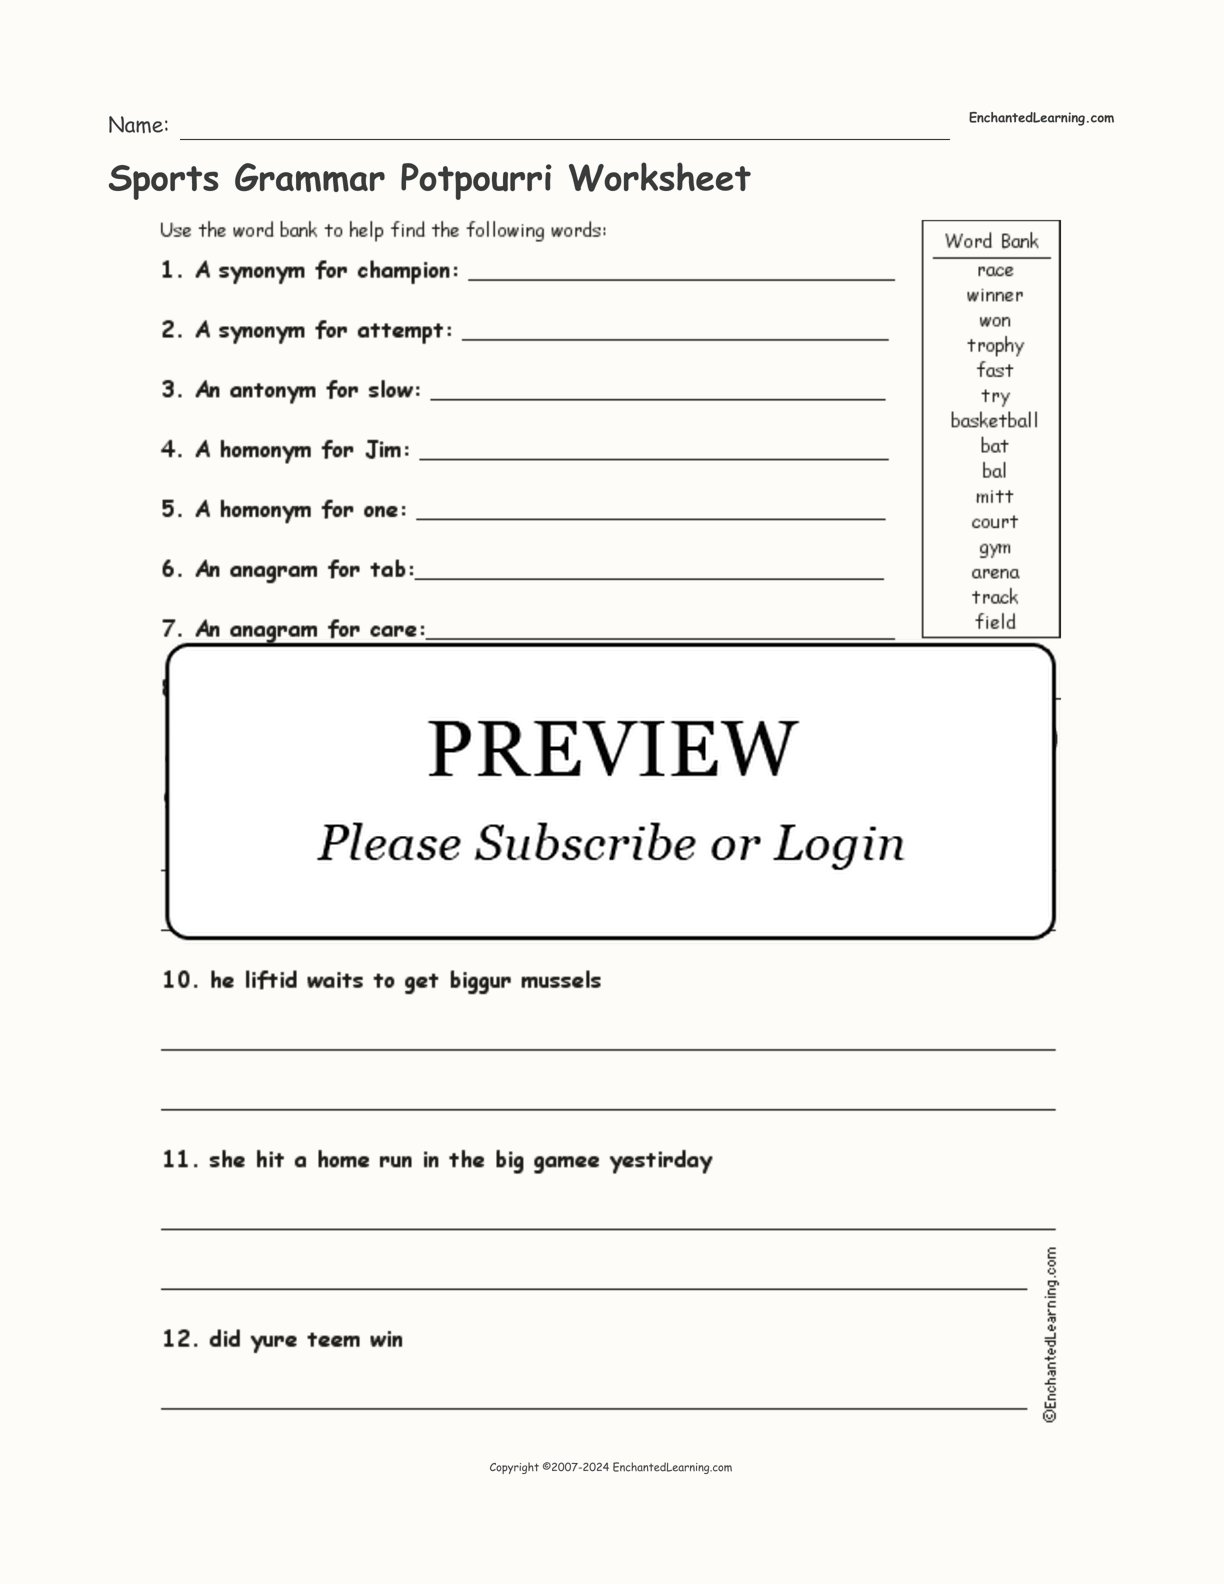 Sports Grammar Potpourri Worksheet interactive worksheet page 1